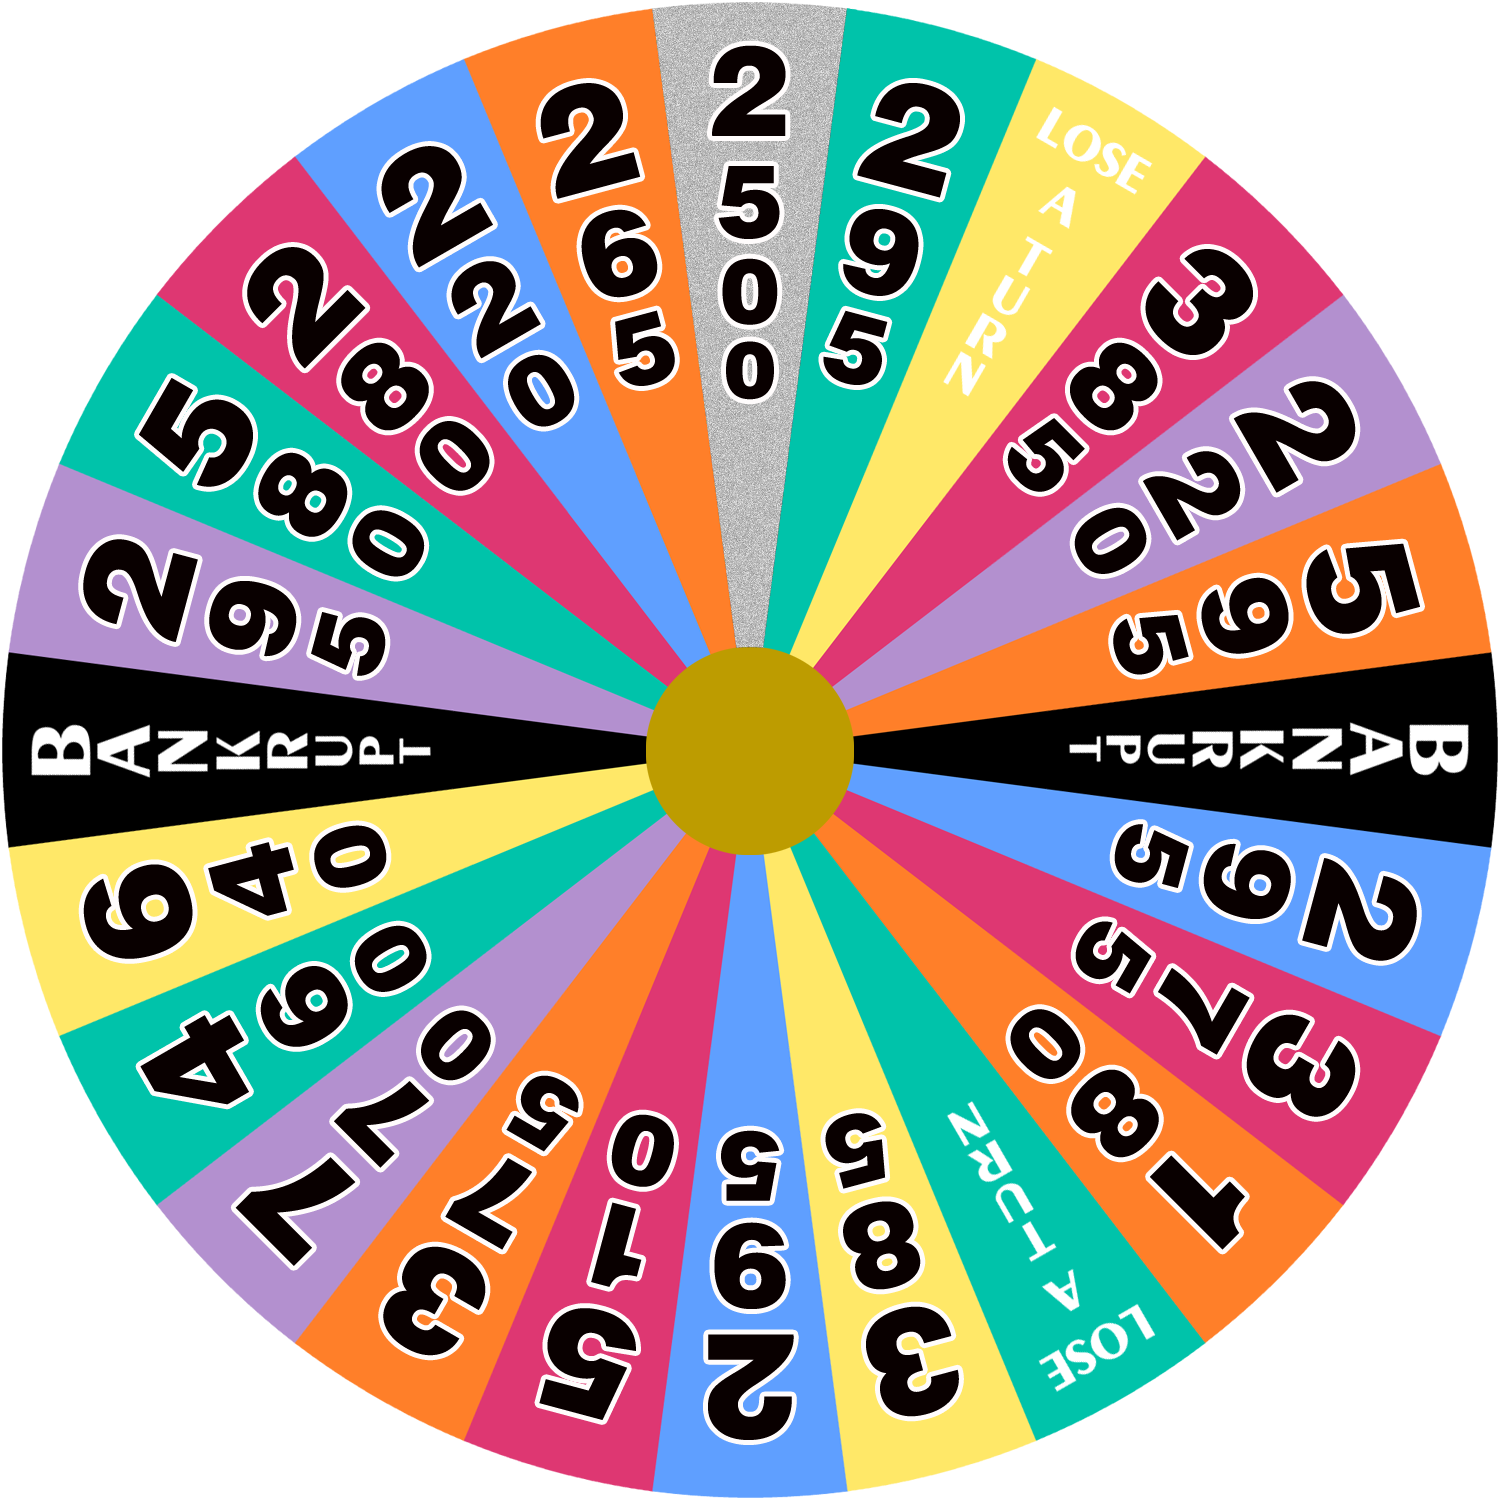 Australian Wheel of Fortune - 2002 - round 3 by wheelgenius